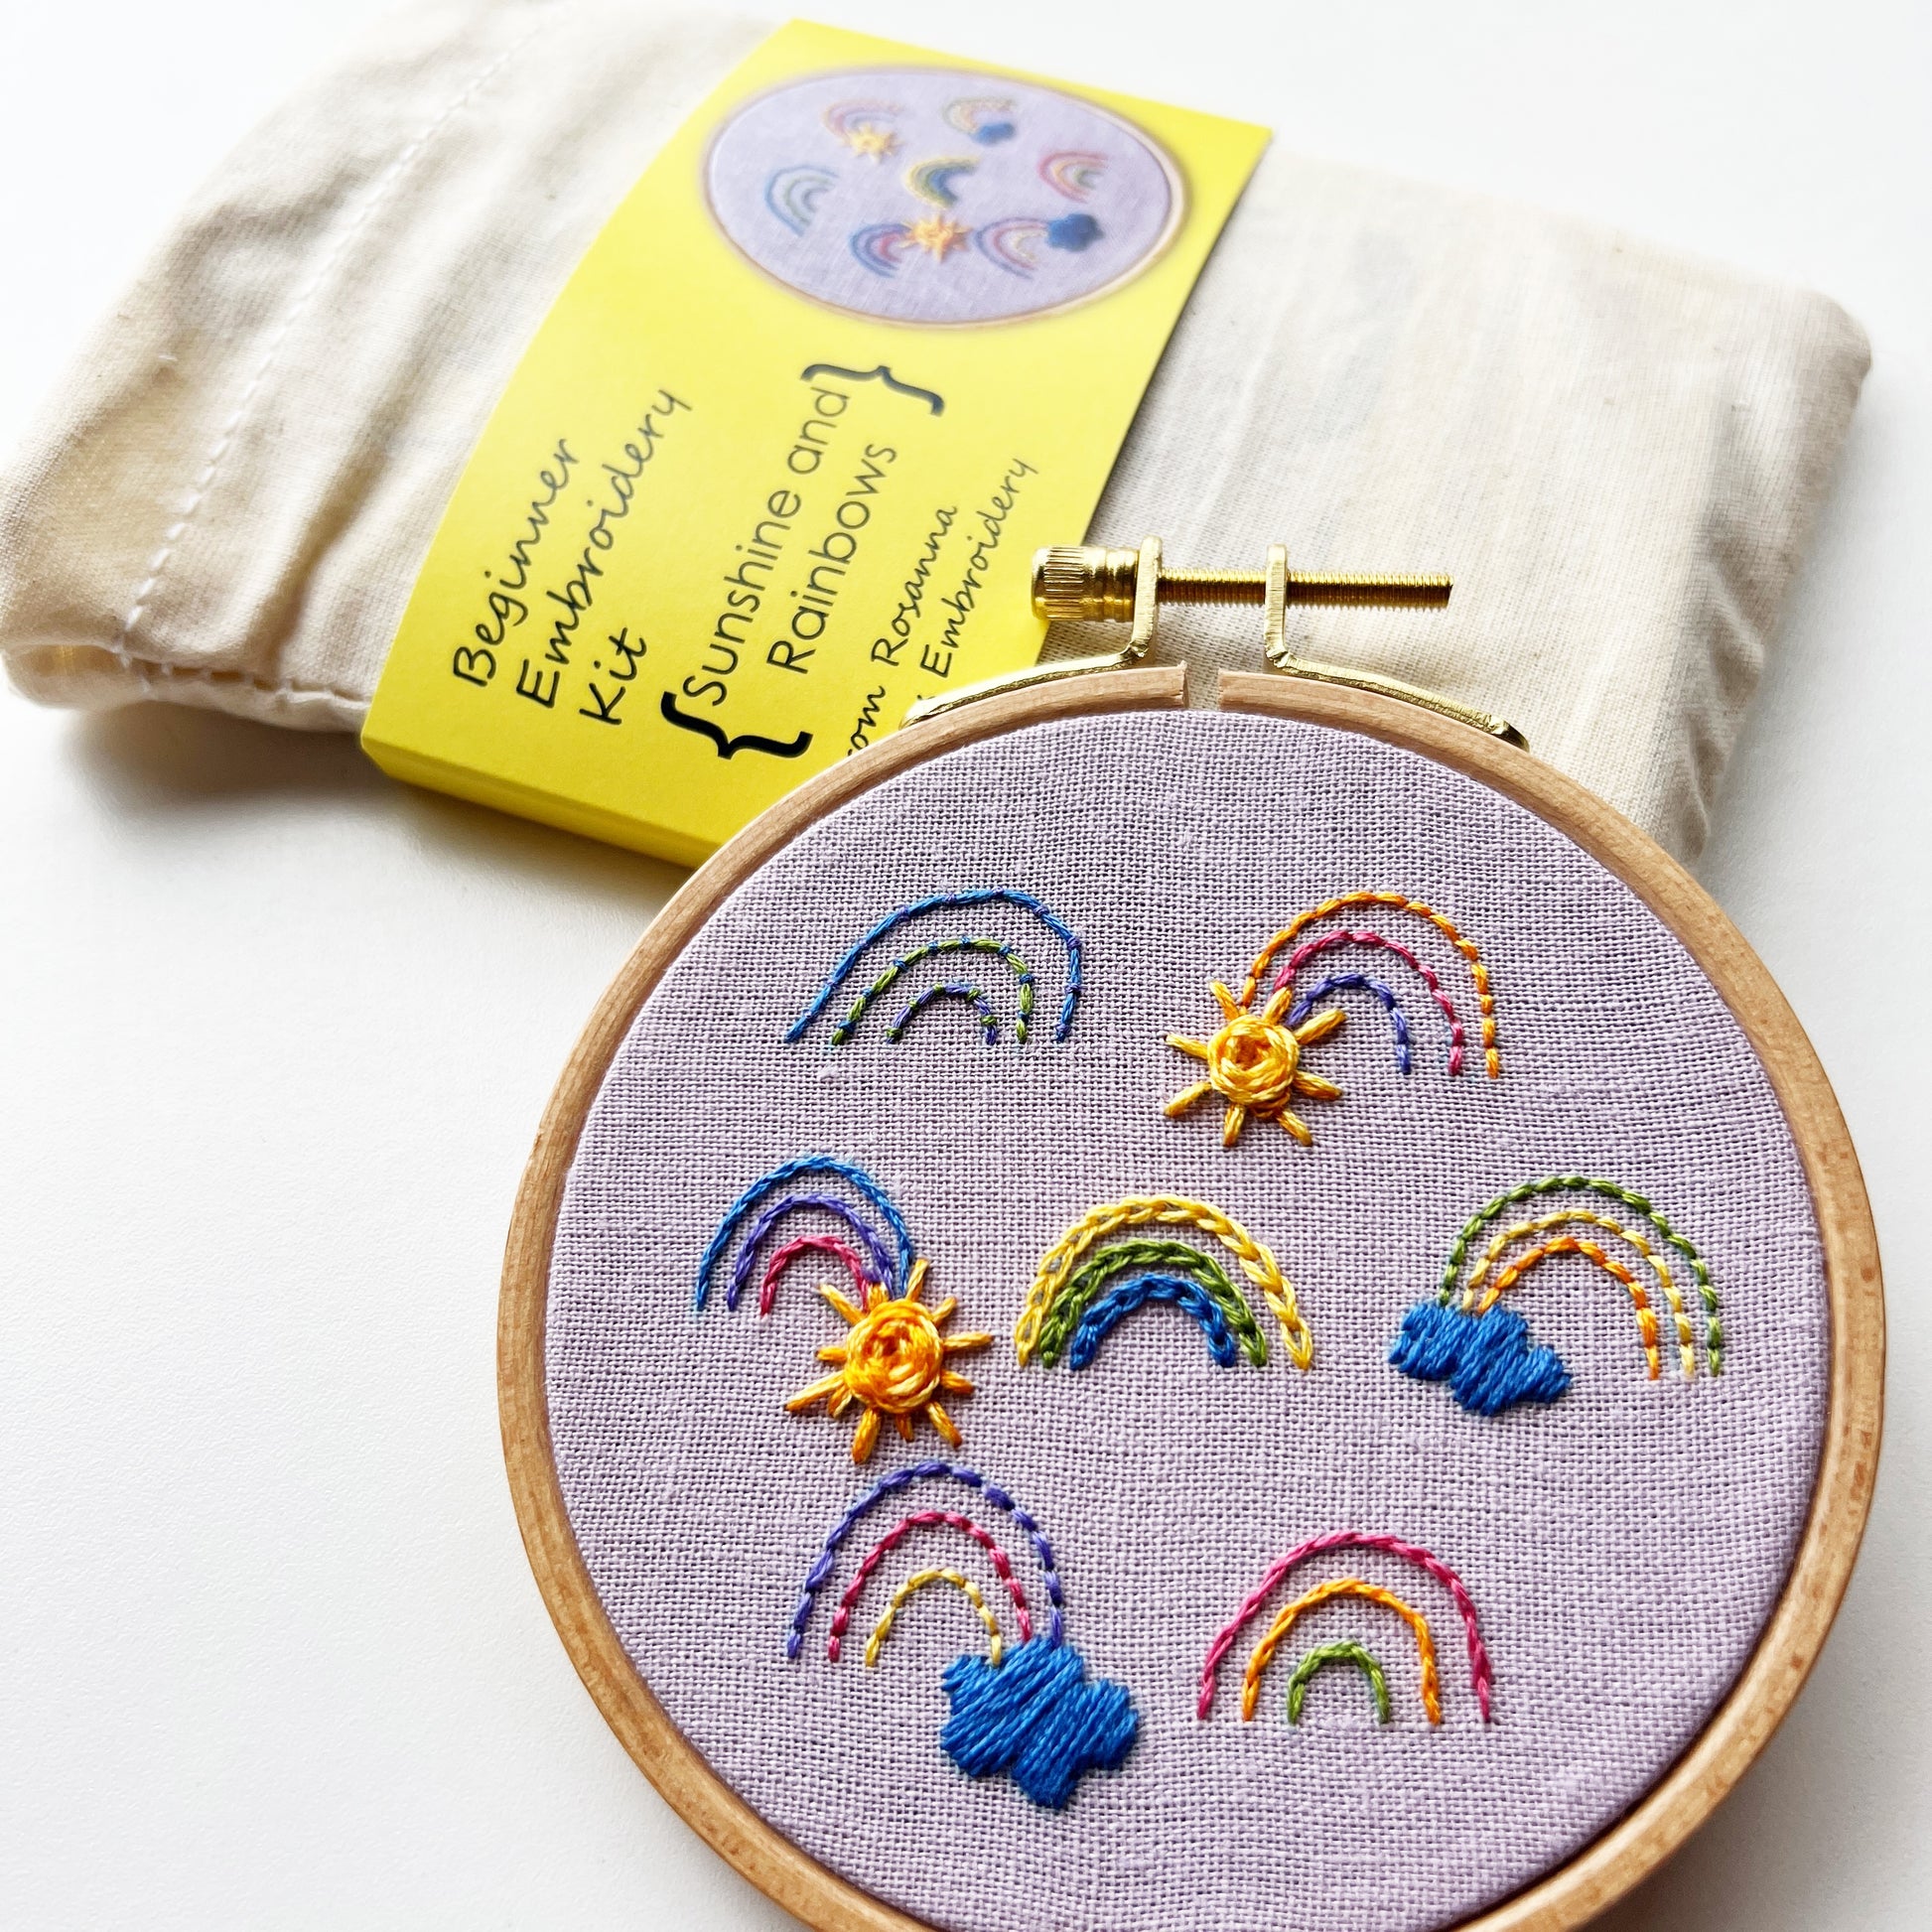 Beginner Embroidery Kit 